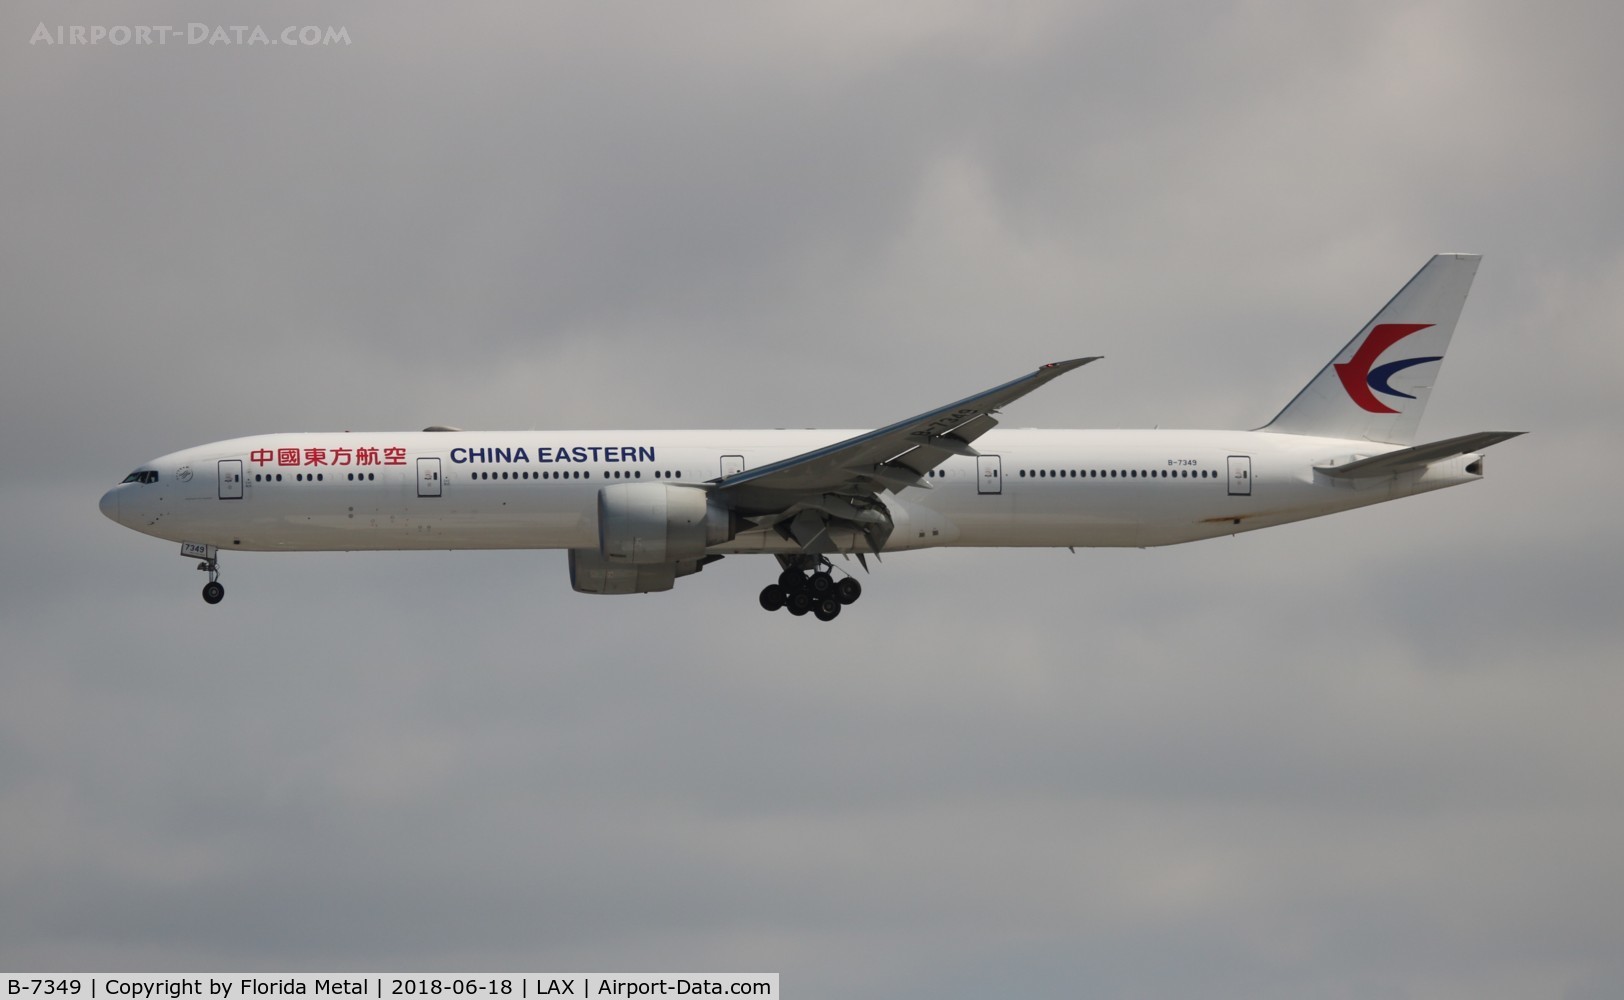 B-7349, 2016 Boeing 777-300/ER C/N 43279, China Eastern